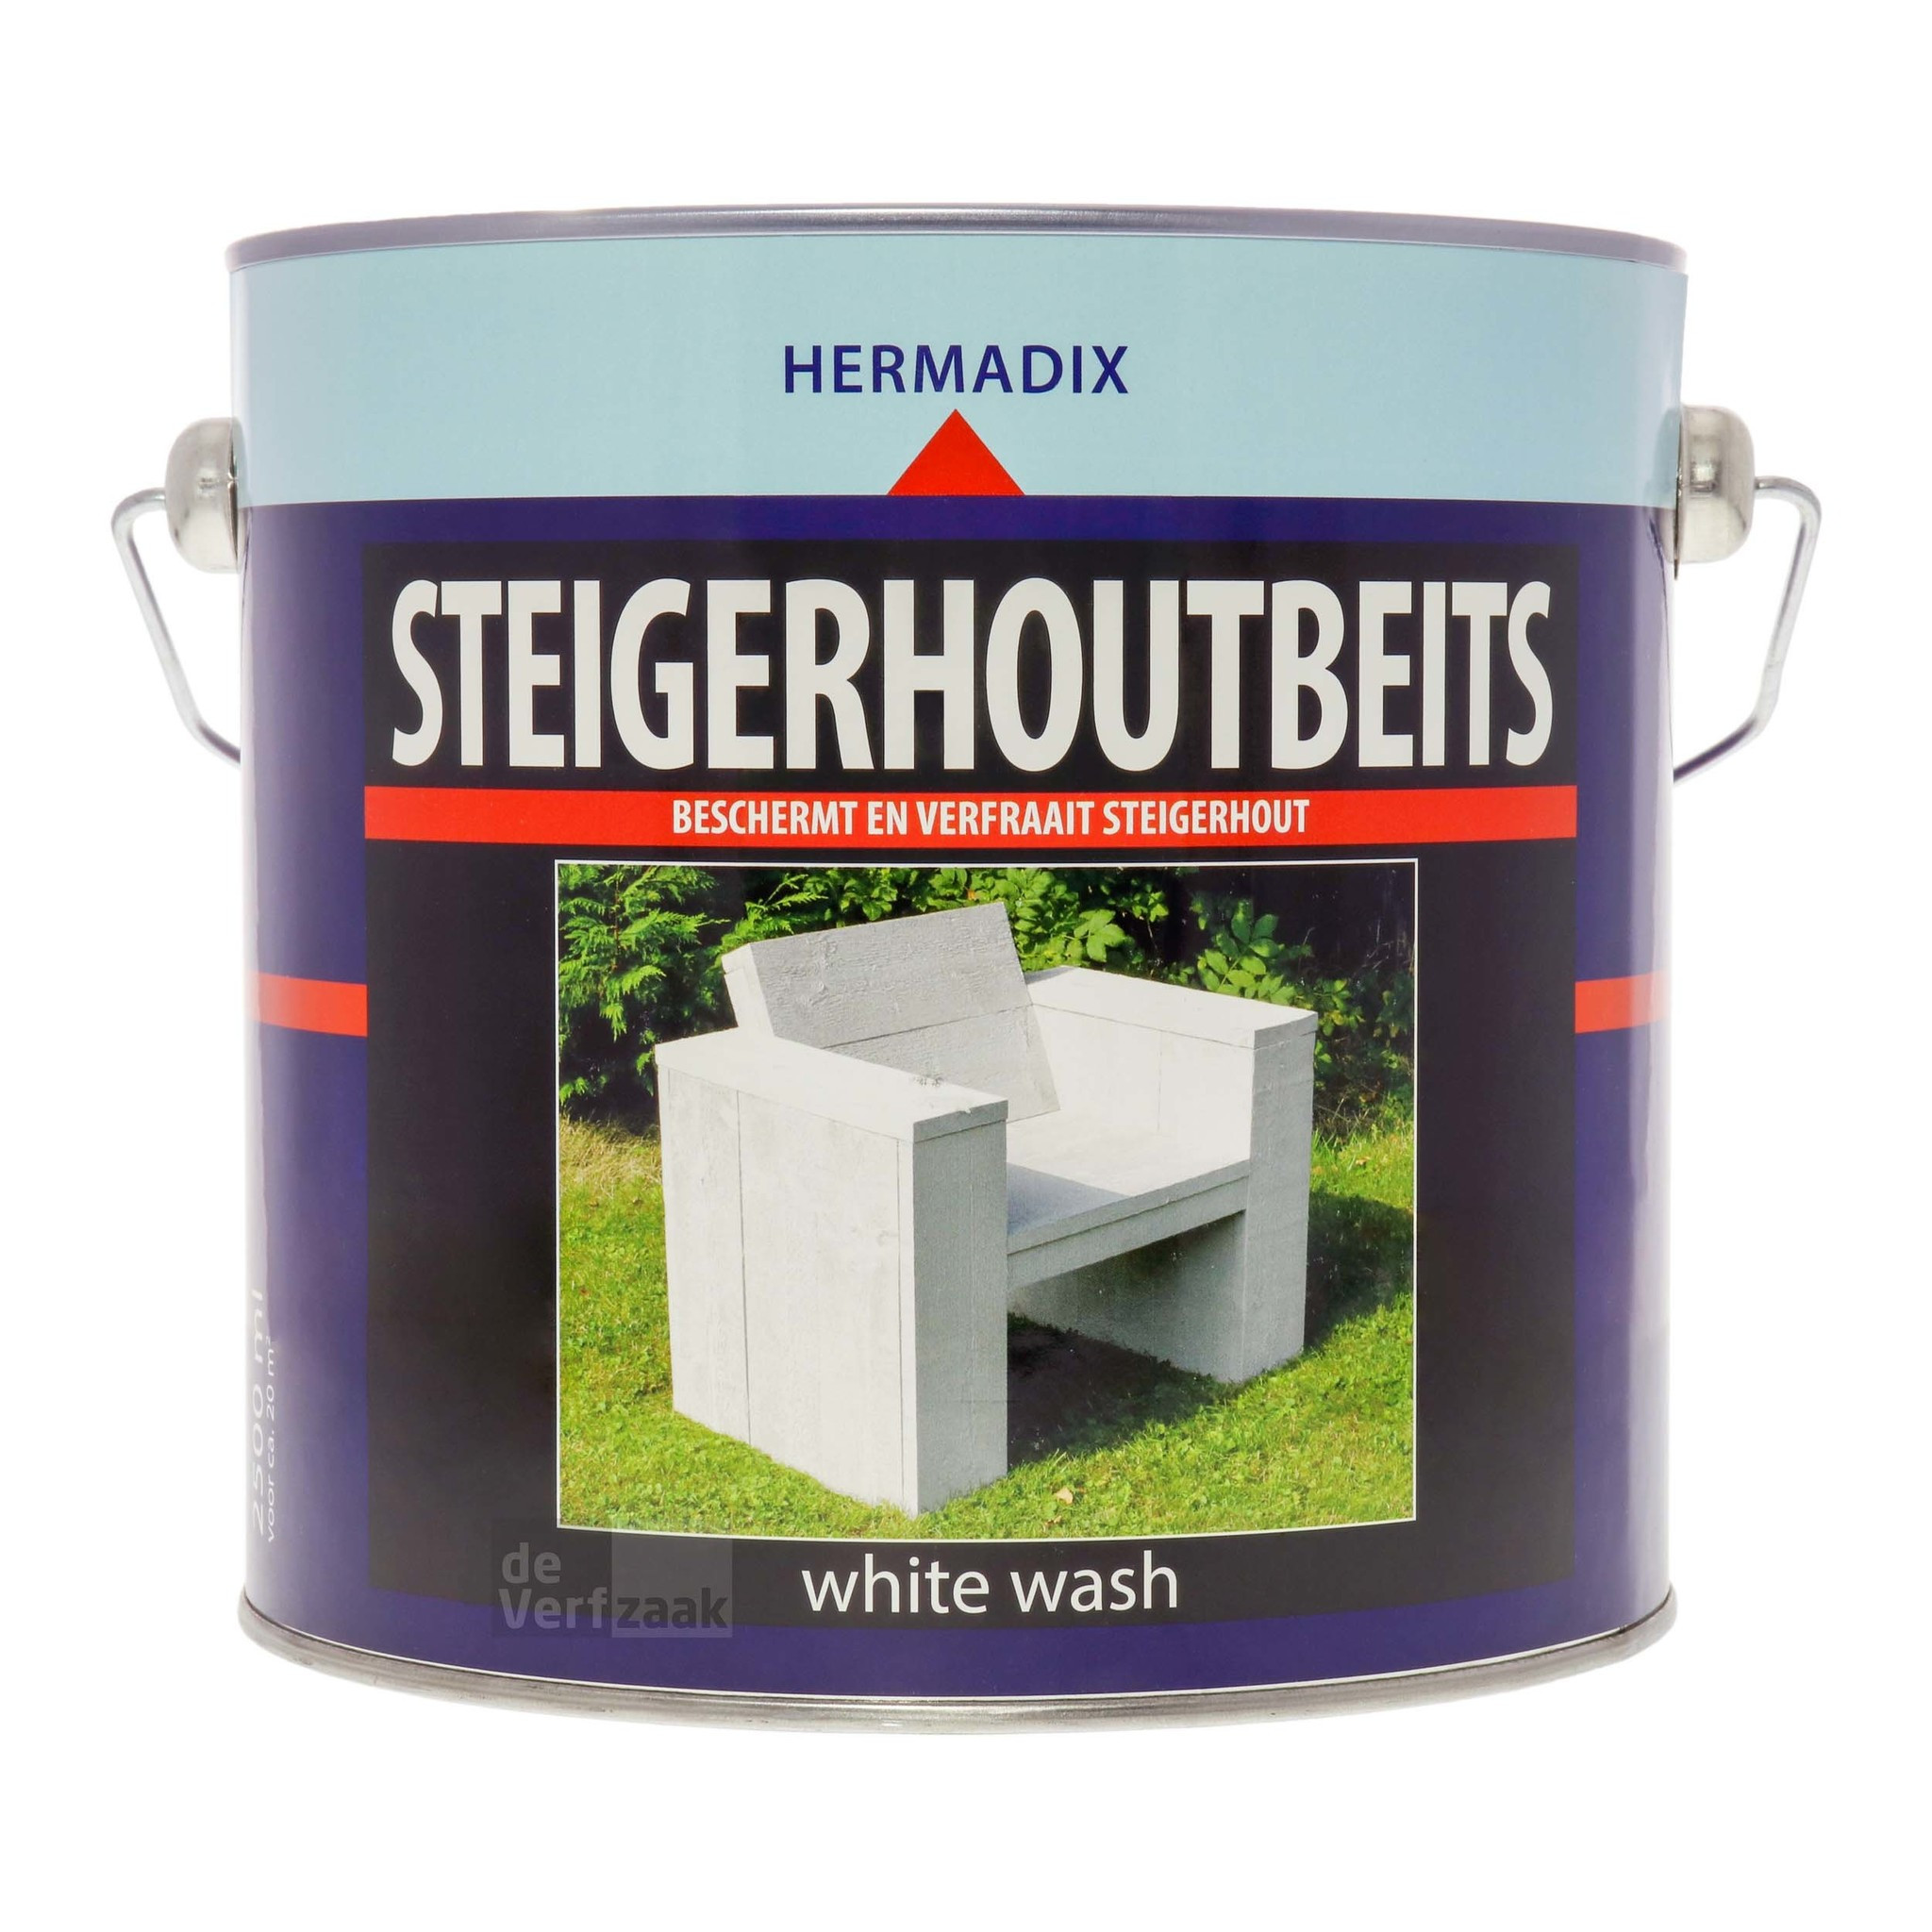 Hermadix Steigerhoutbeits 2,5 liter